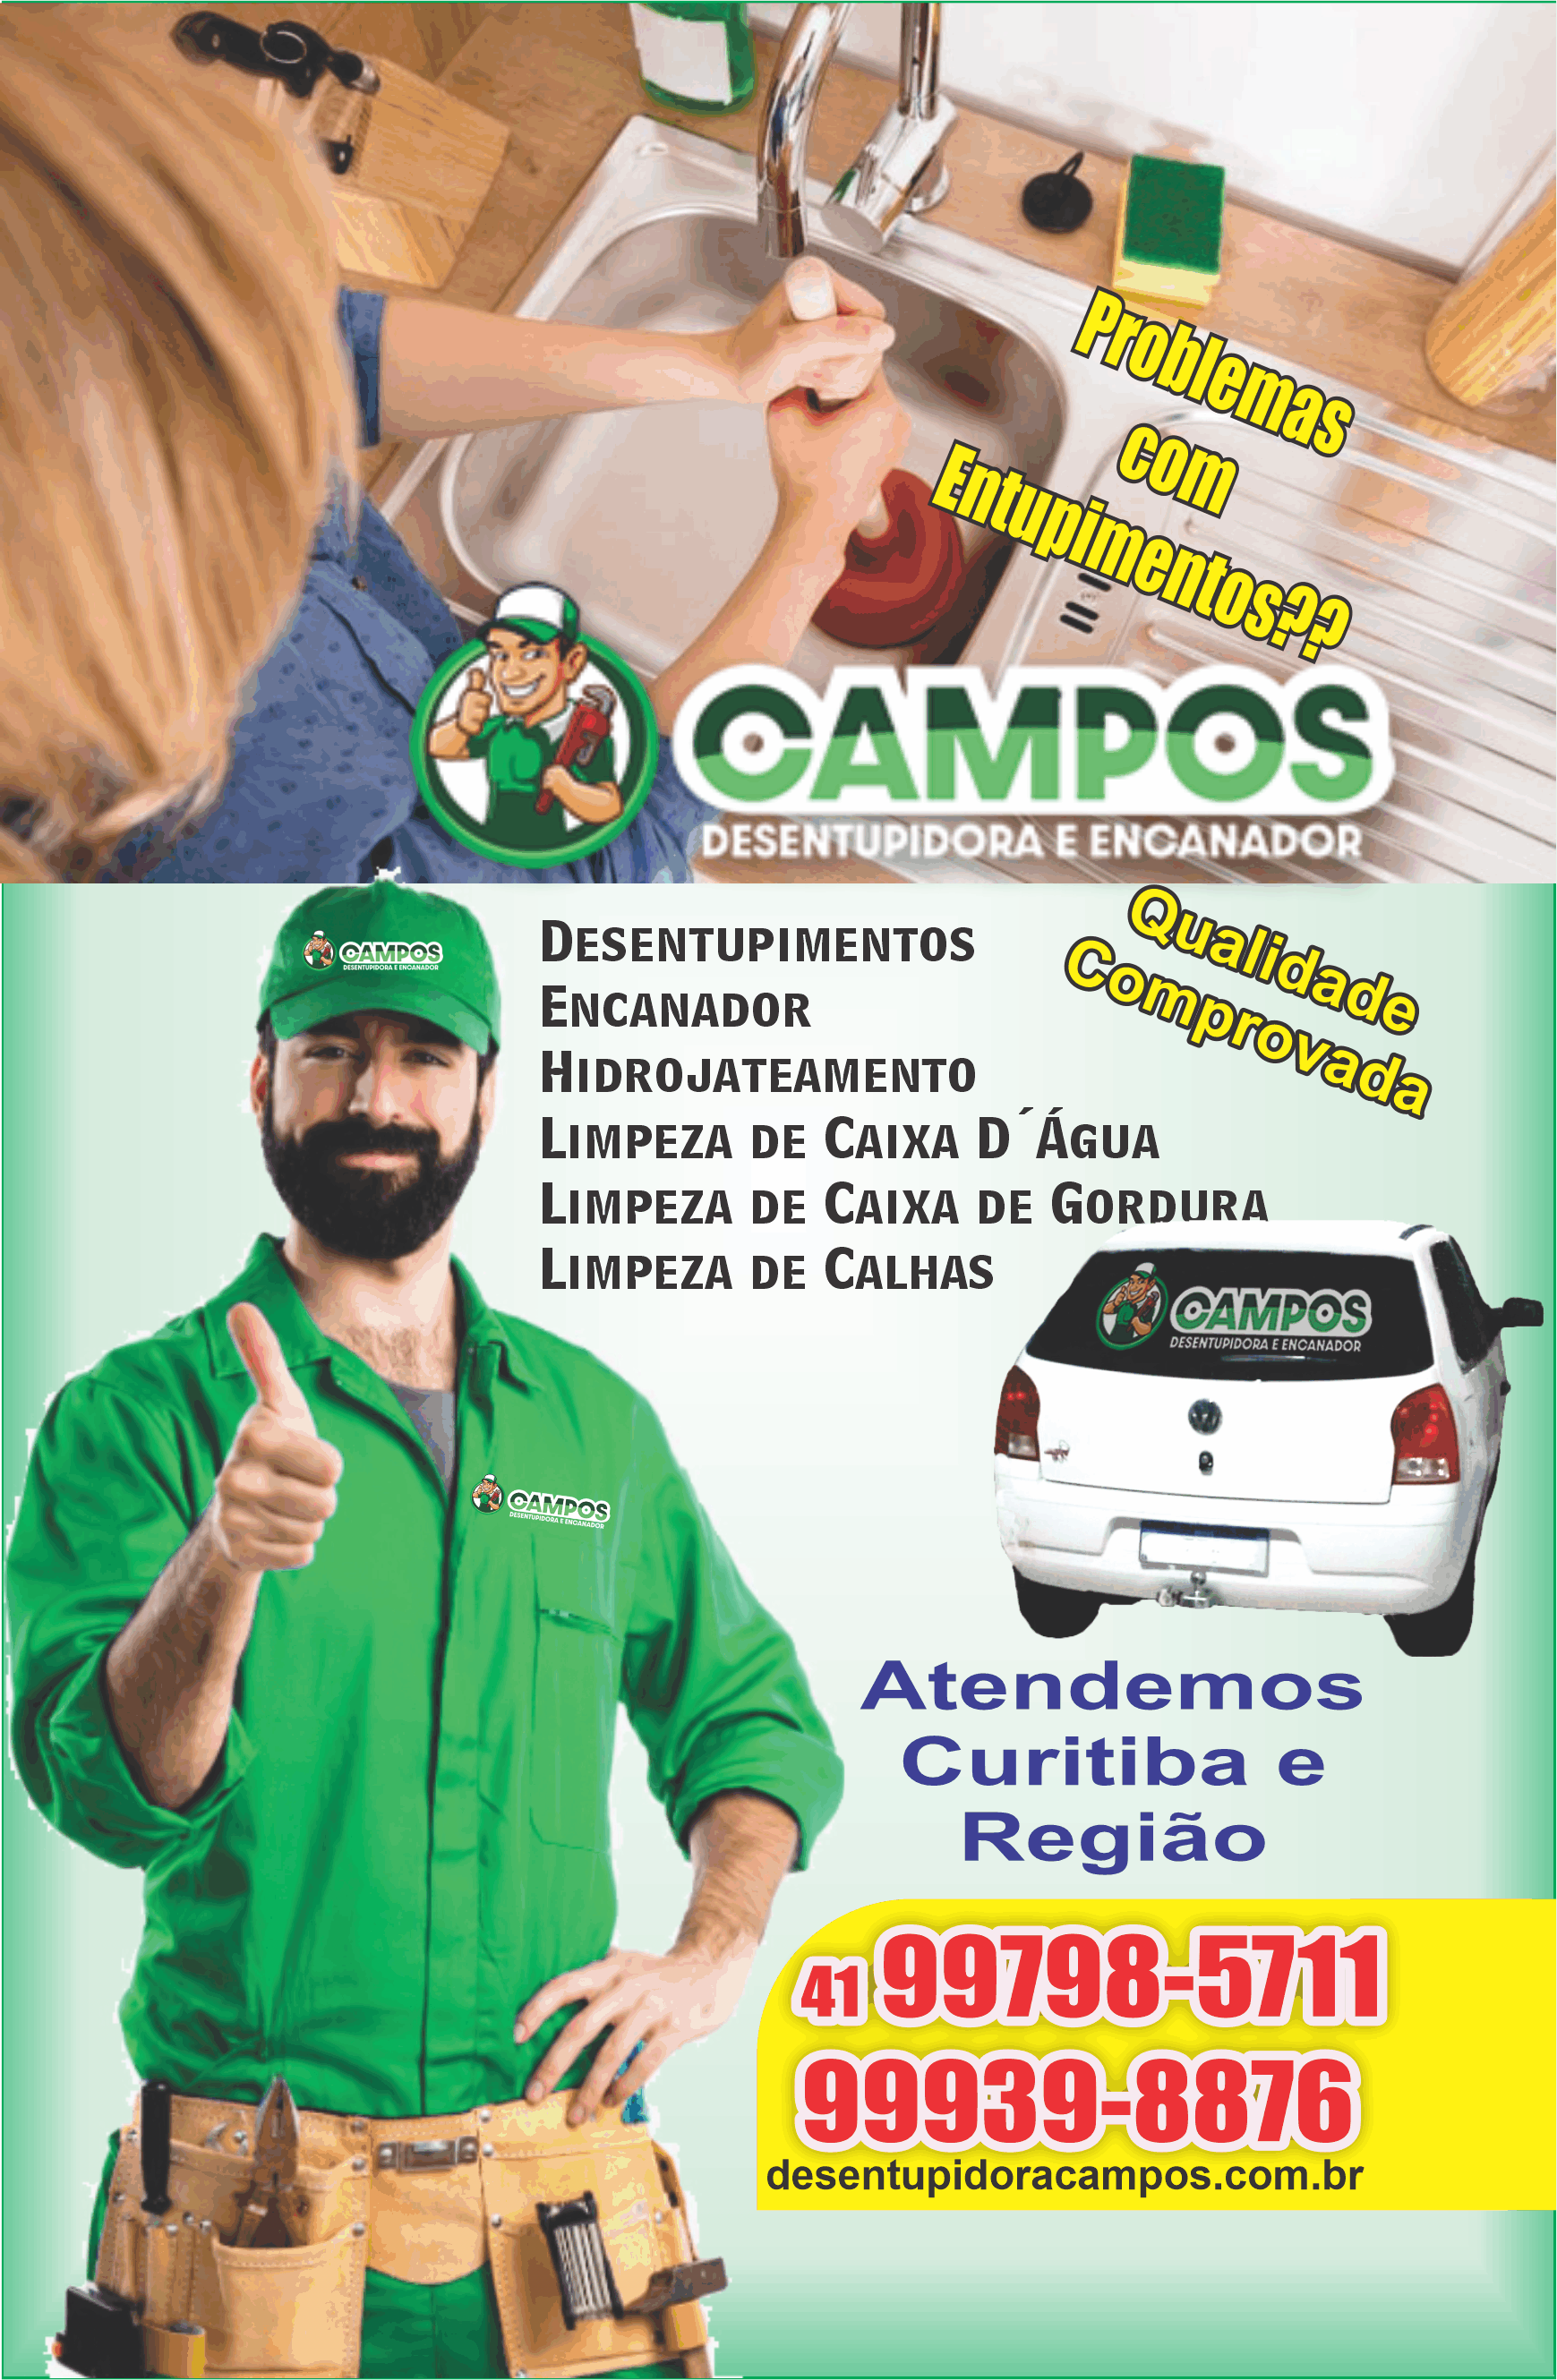 Campos Desentupidora e Encanador      Fones: (41)99798-5711 / (41) 99939-8876